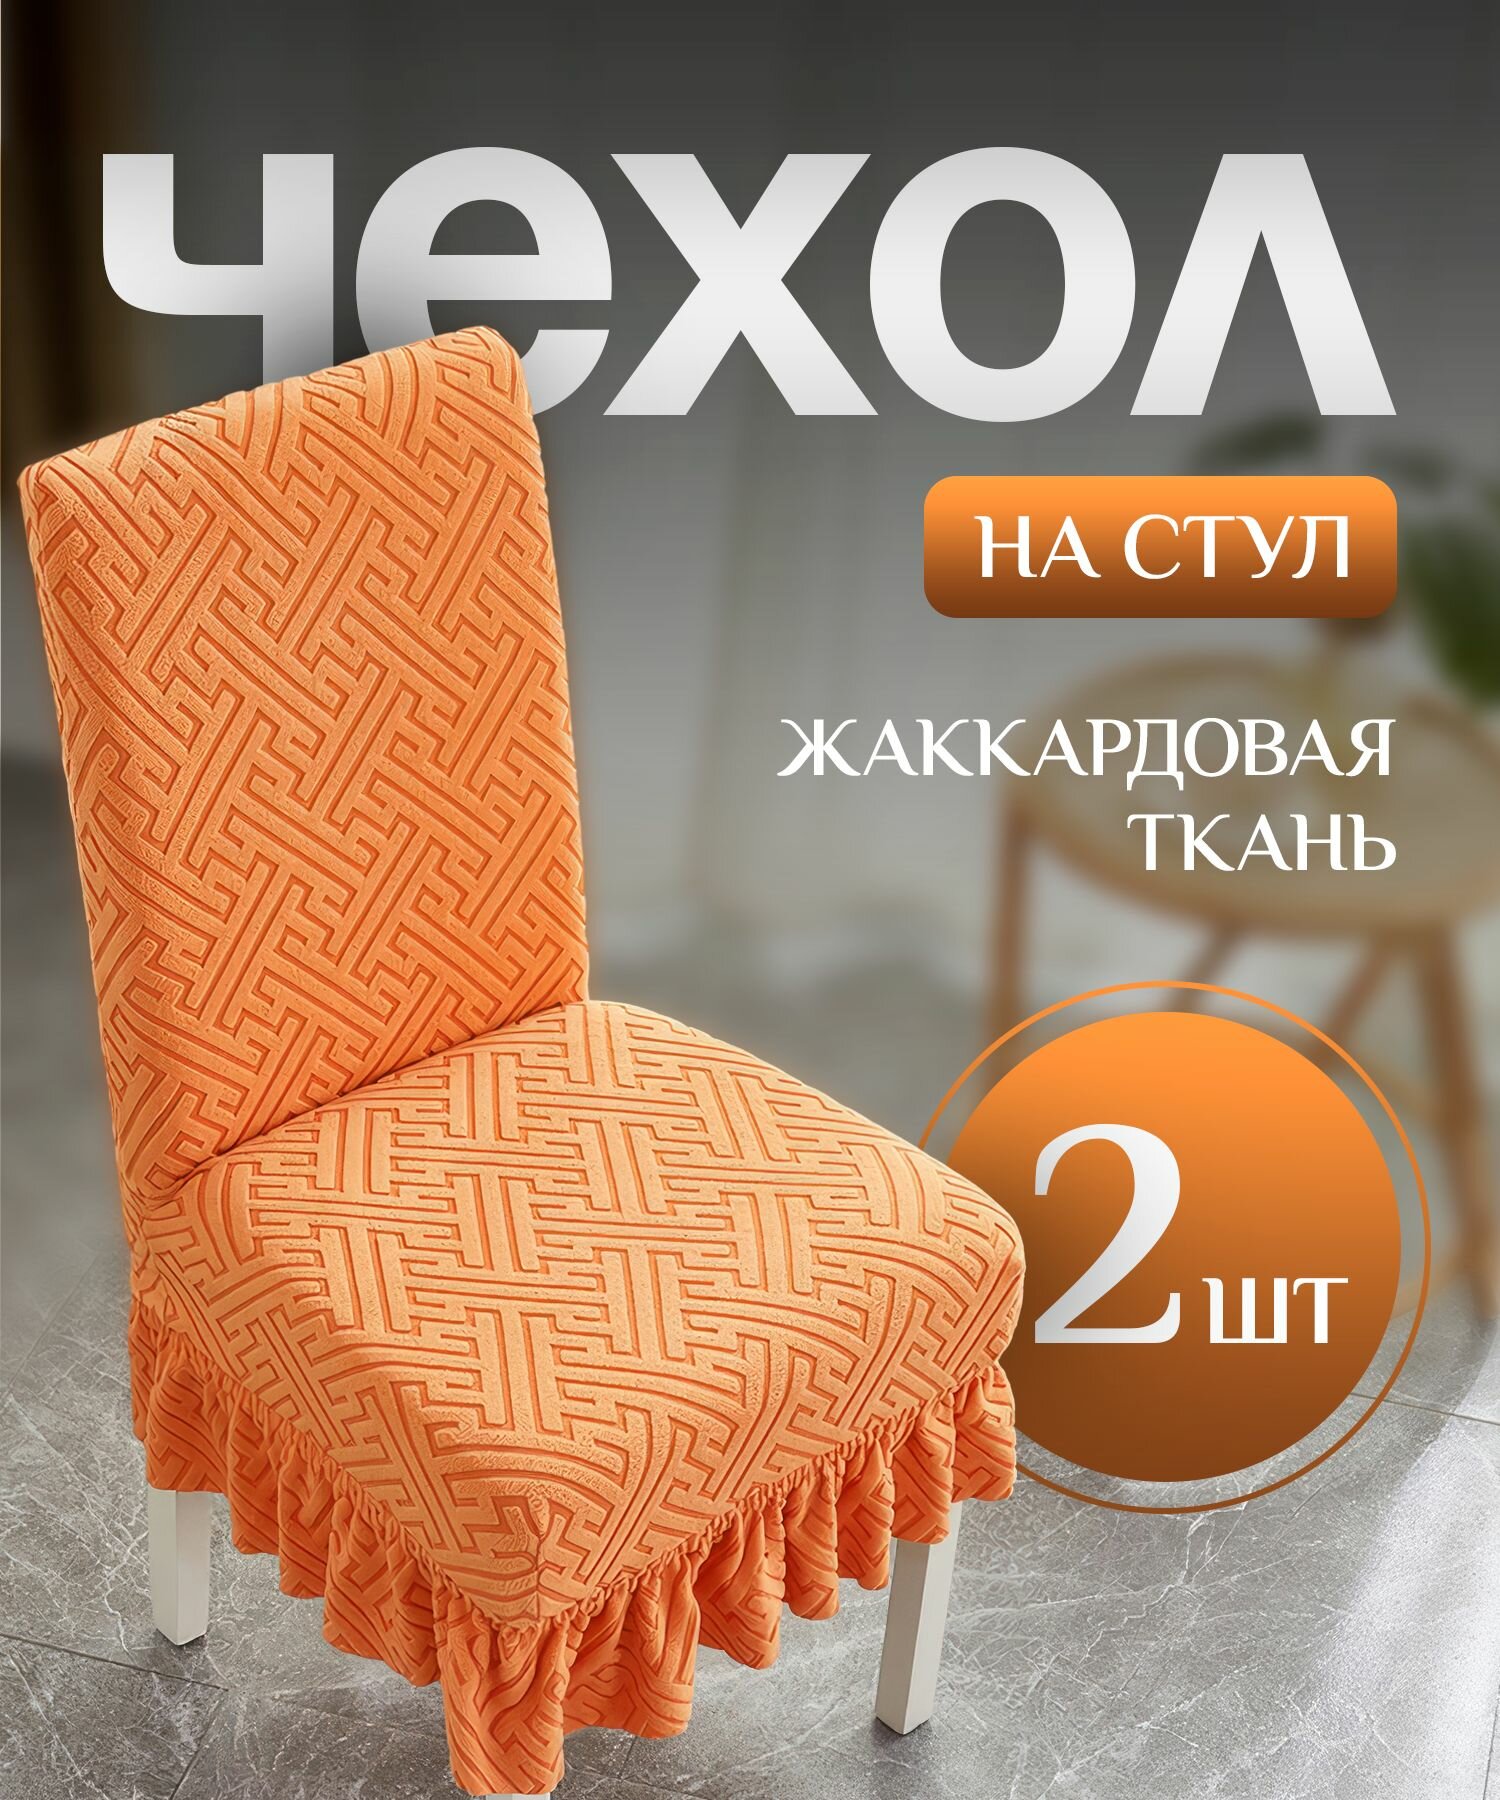 Чехол на стул со спинкой, для мебели, стульев с рюшкой оранжевый 2 штуки в комплекте